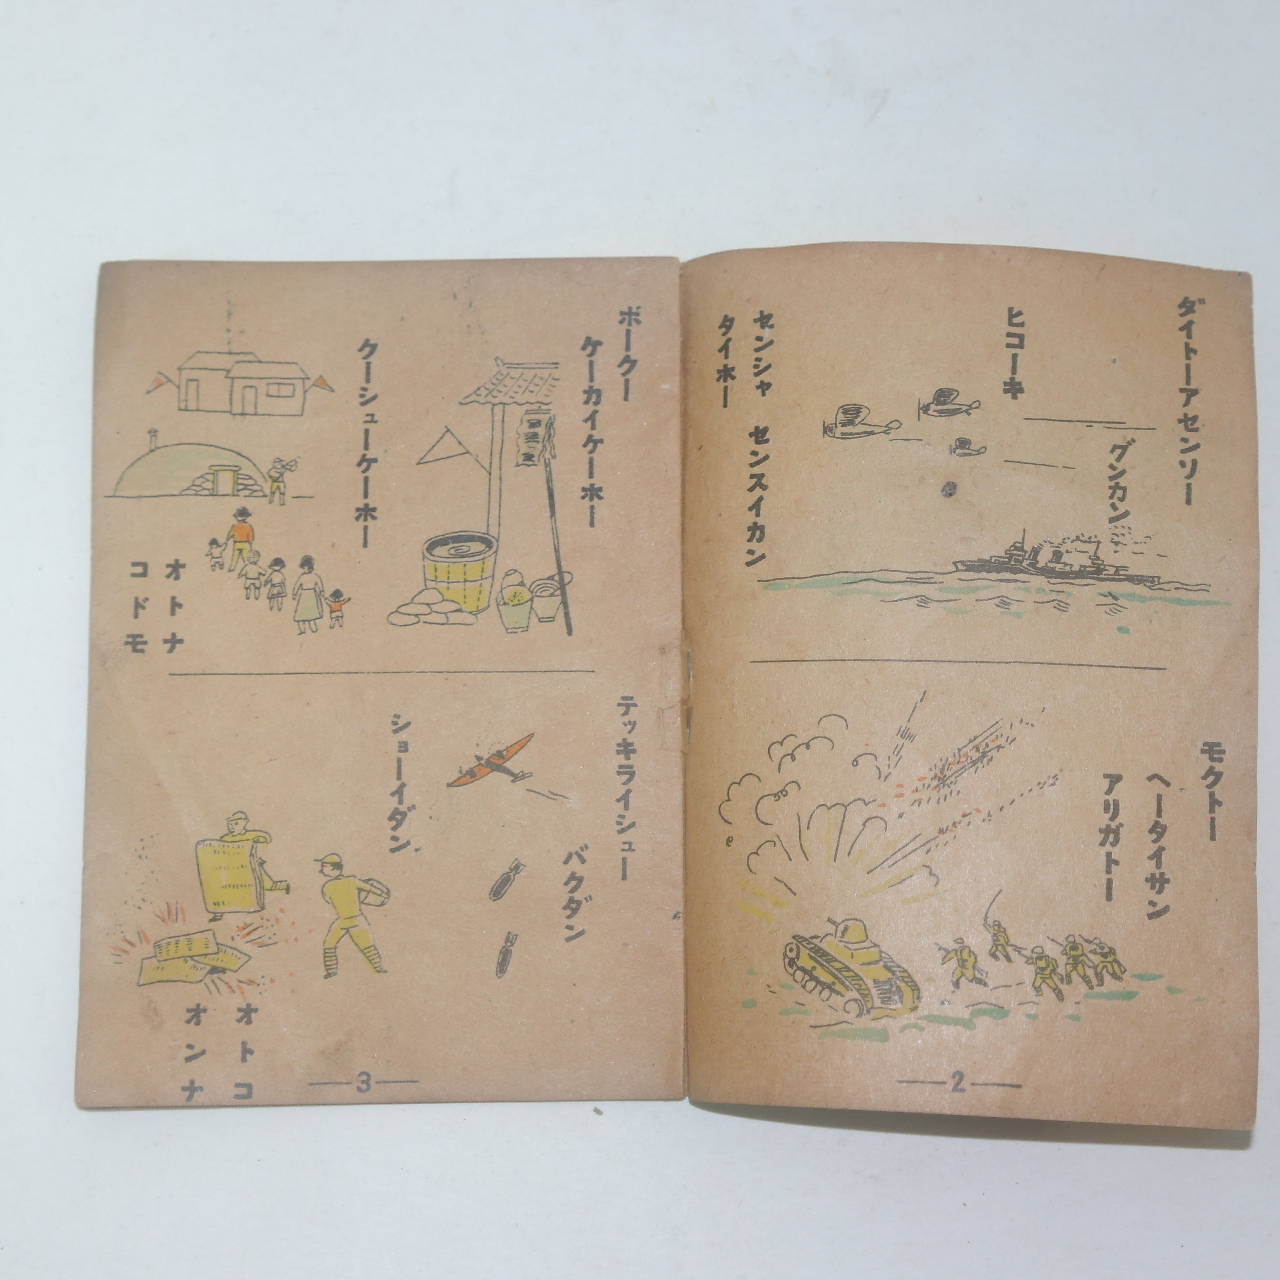 1942년 경성간행 국민총력 조선연맹간행 칼라삽화가있는 수진본